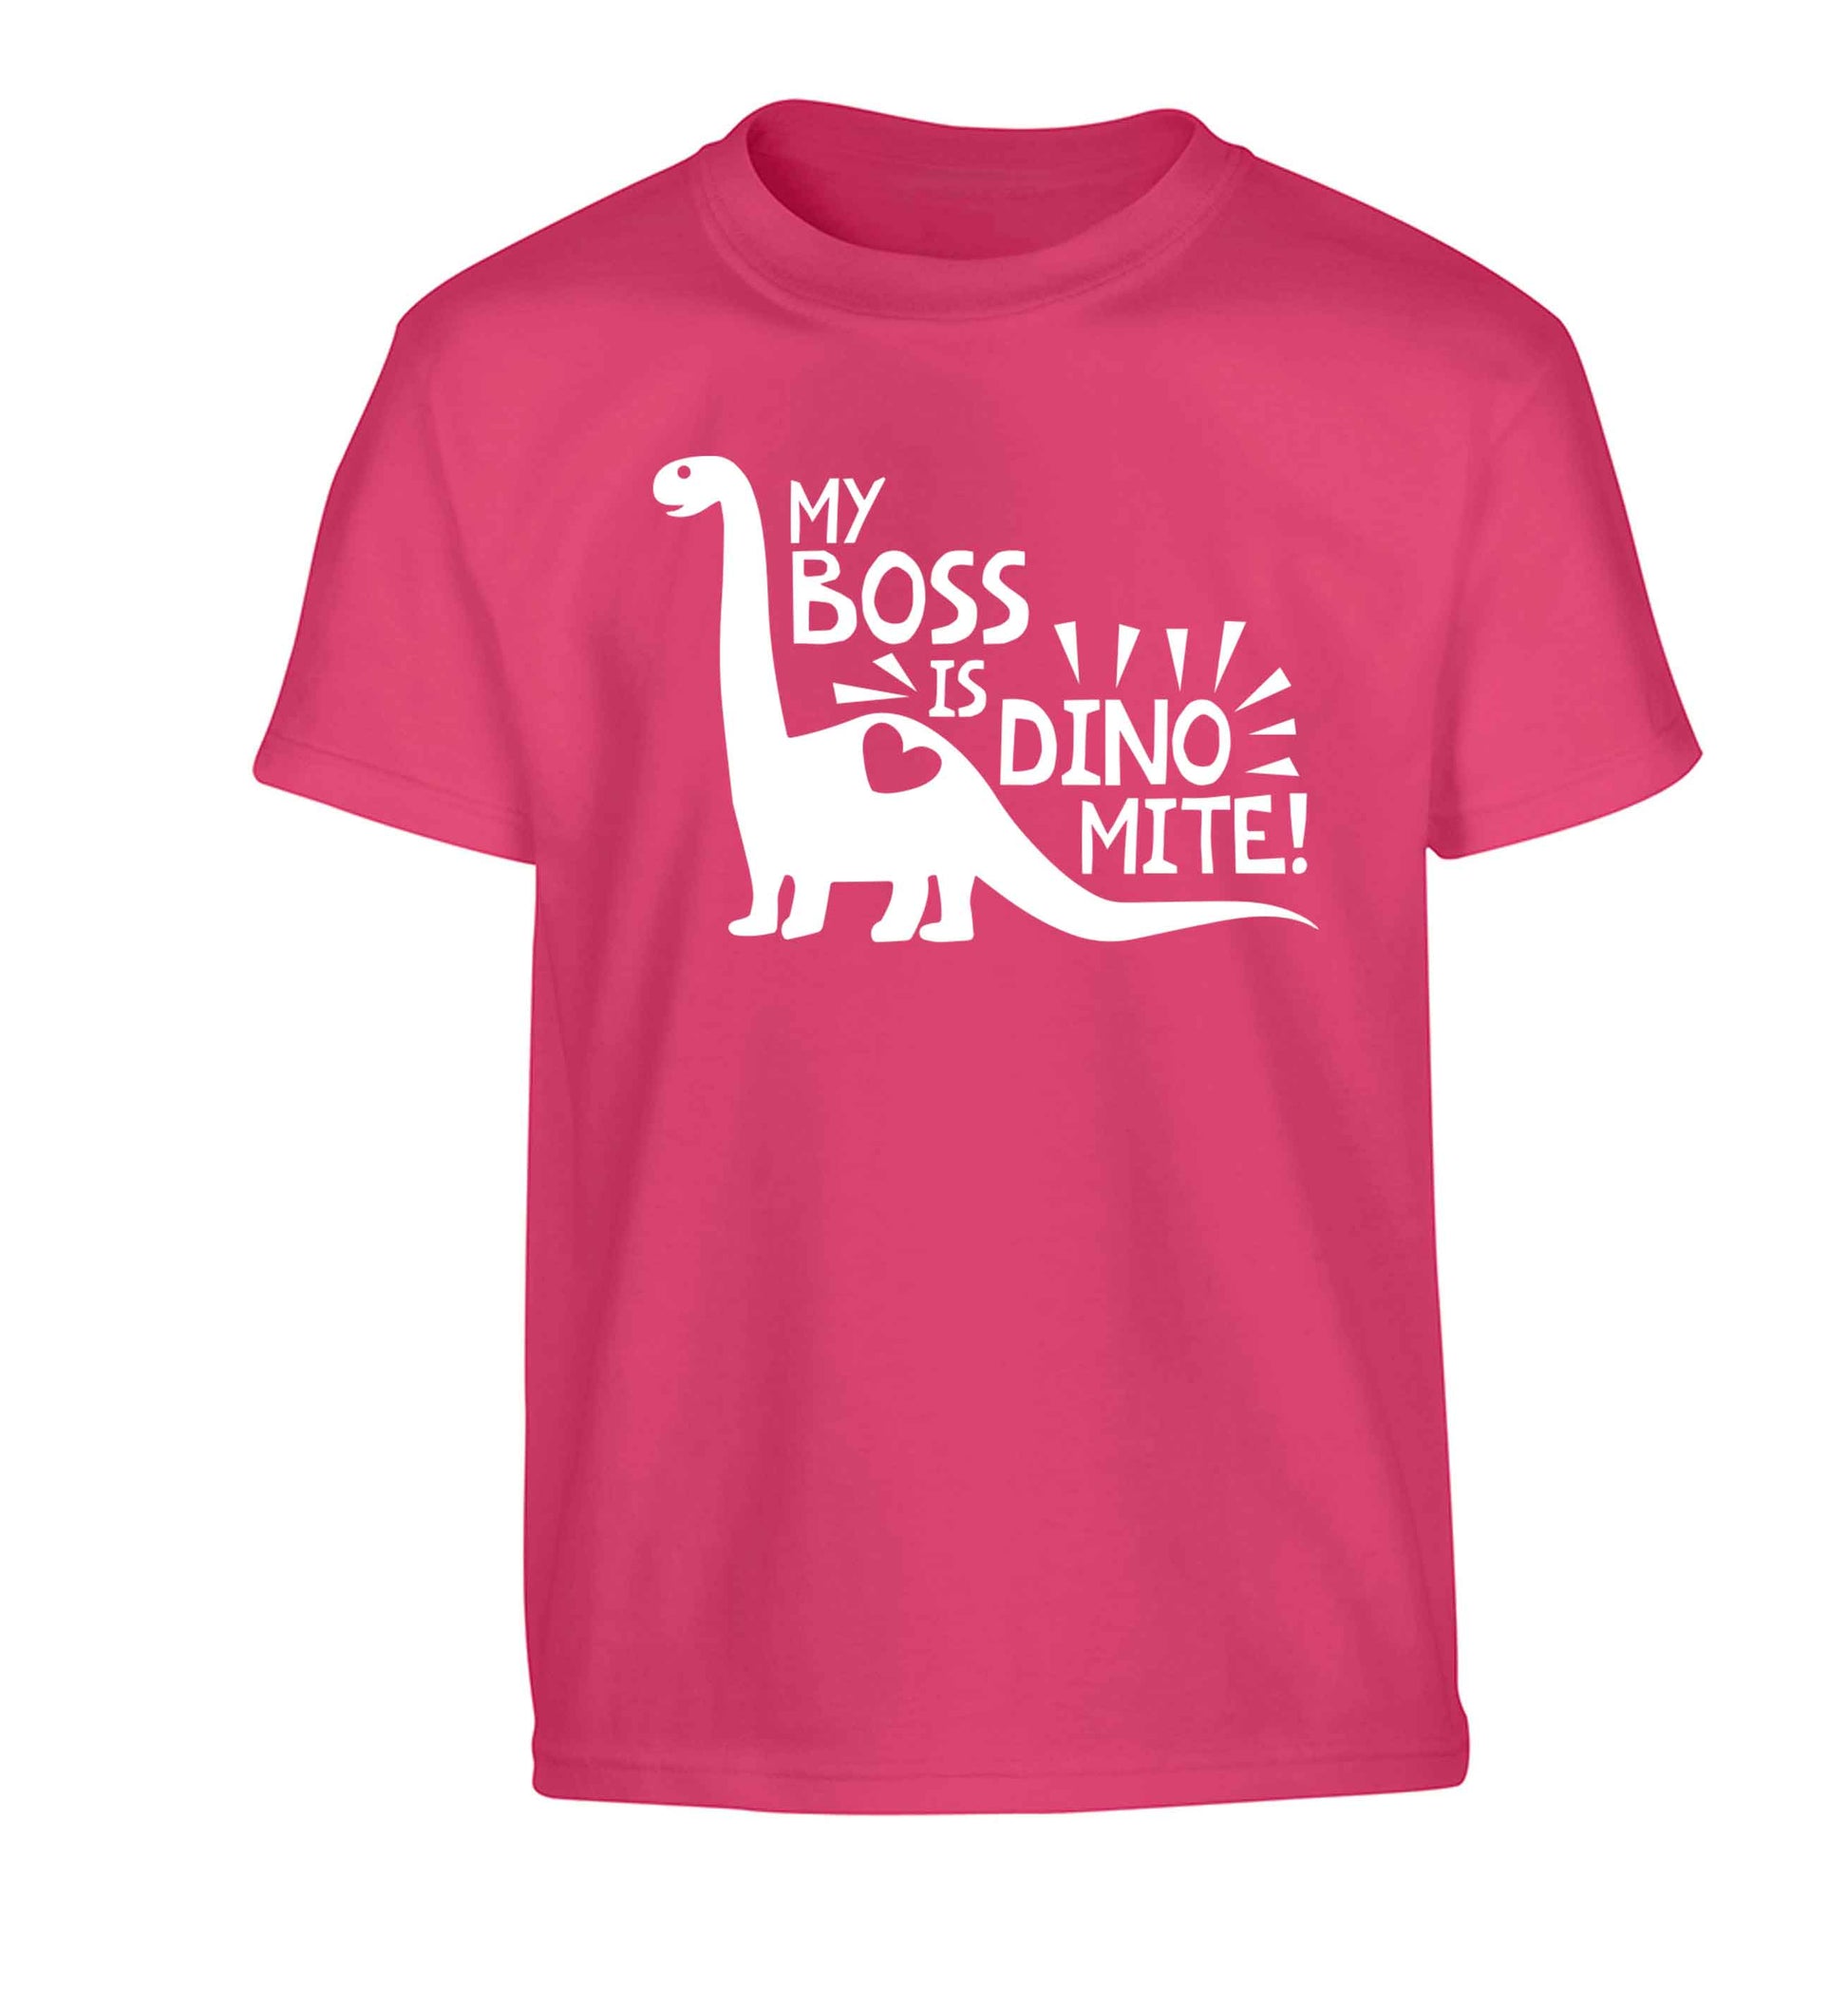 My boss is dinomite! Children's pink Tshirt 12-13 Years